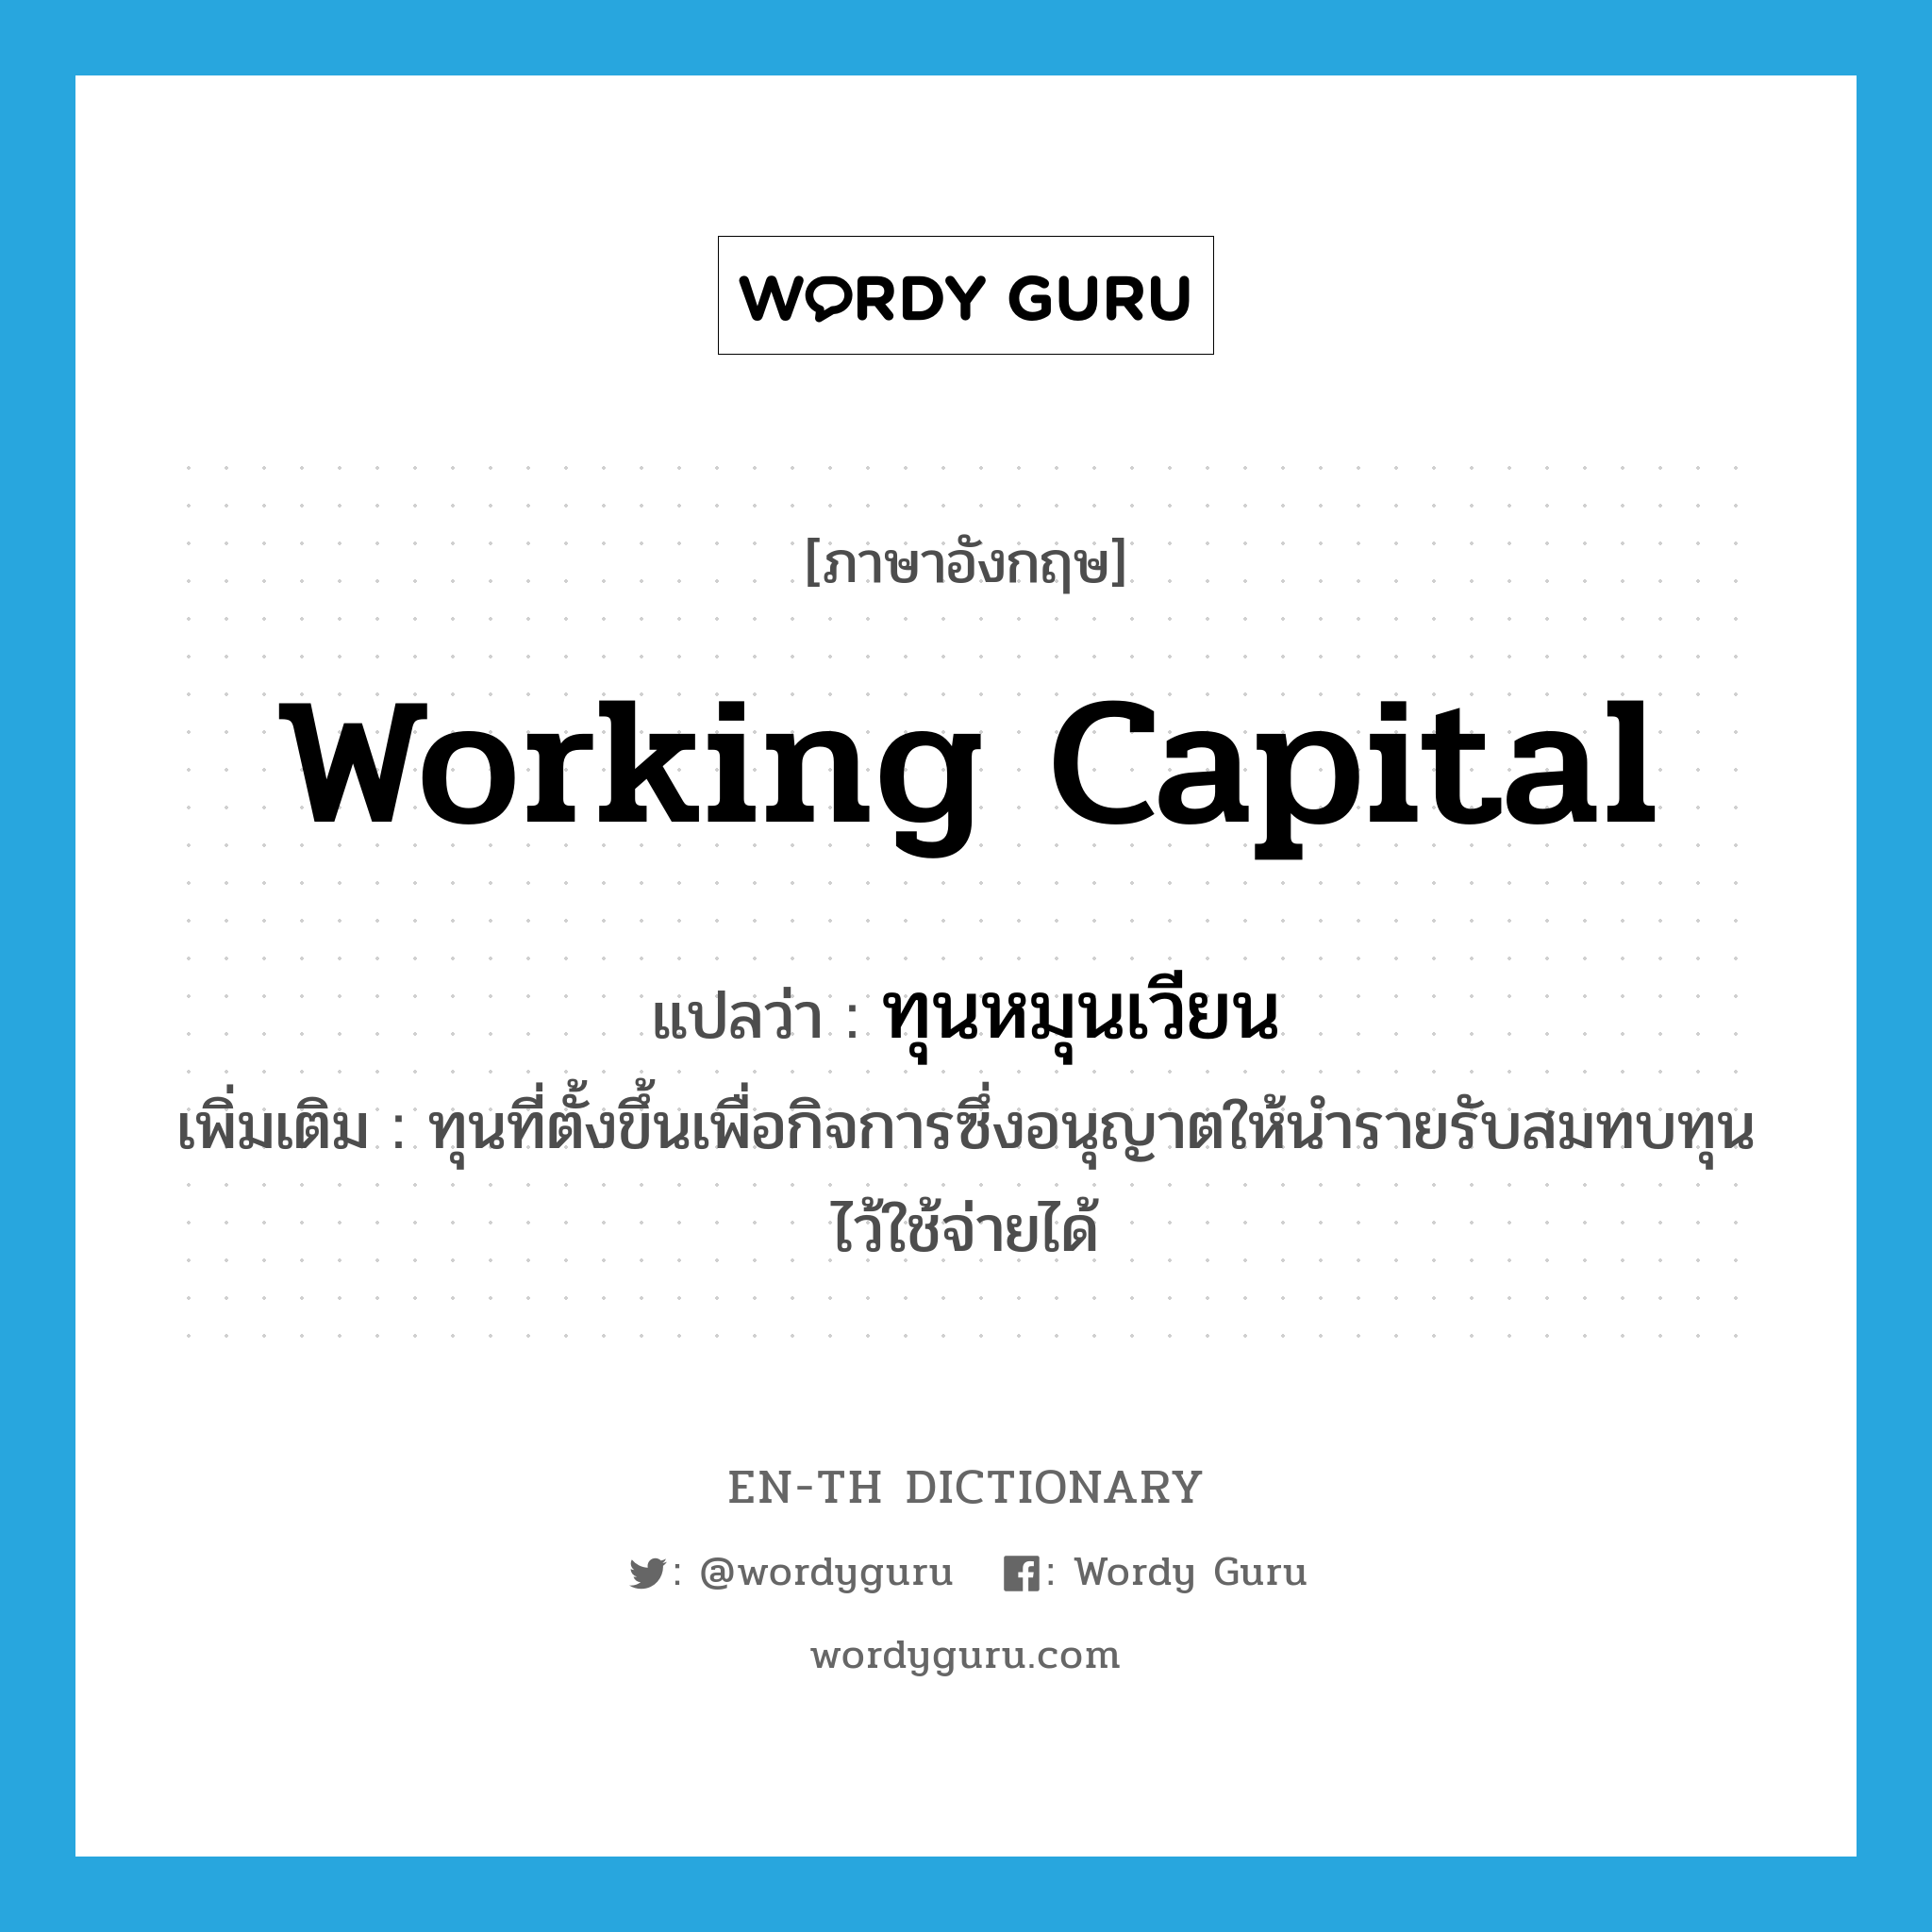 working capital แปลว่า?, คำศัพท์ภาษาอังกฤษ working capital แปลว่า ทุนหมุนเวียน ประเภท N เพิ่มเติม ทุนที่ตั้งขึ้นเพื่อกิจการซึ่งอนุญาตให้นำรายรับสมทบทุนไว้ใช้จ่ายได้ หมวด N